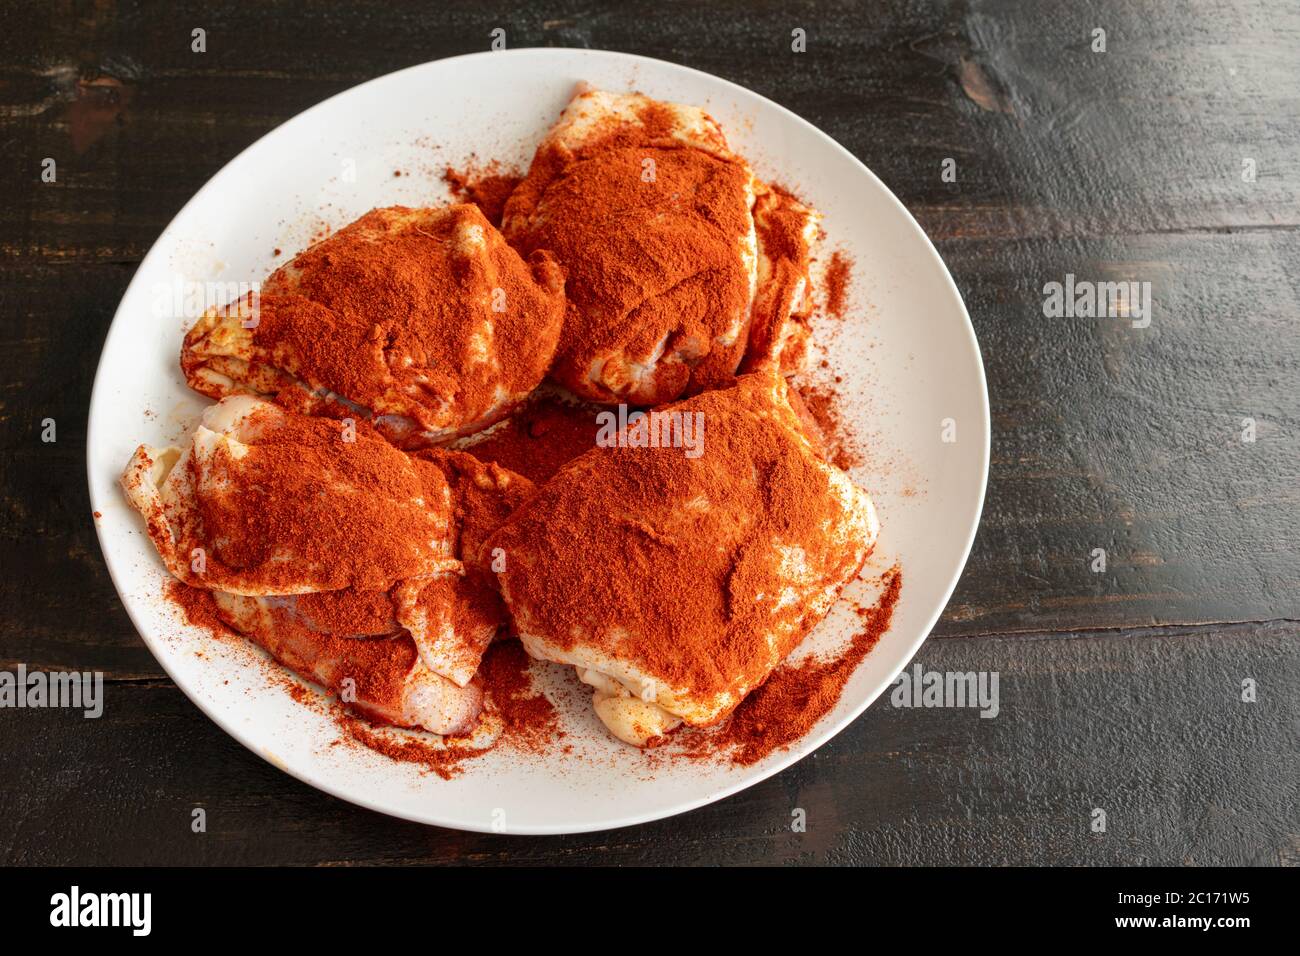 Cosce di pollo condite con Paprika per il pollo Paprikash: Cosce di pollo crude cosparse di paprika dolce ungherese e pimenton (paprika affumicata) Foto Stock